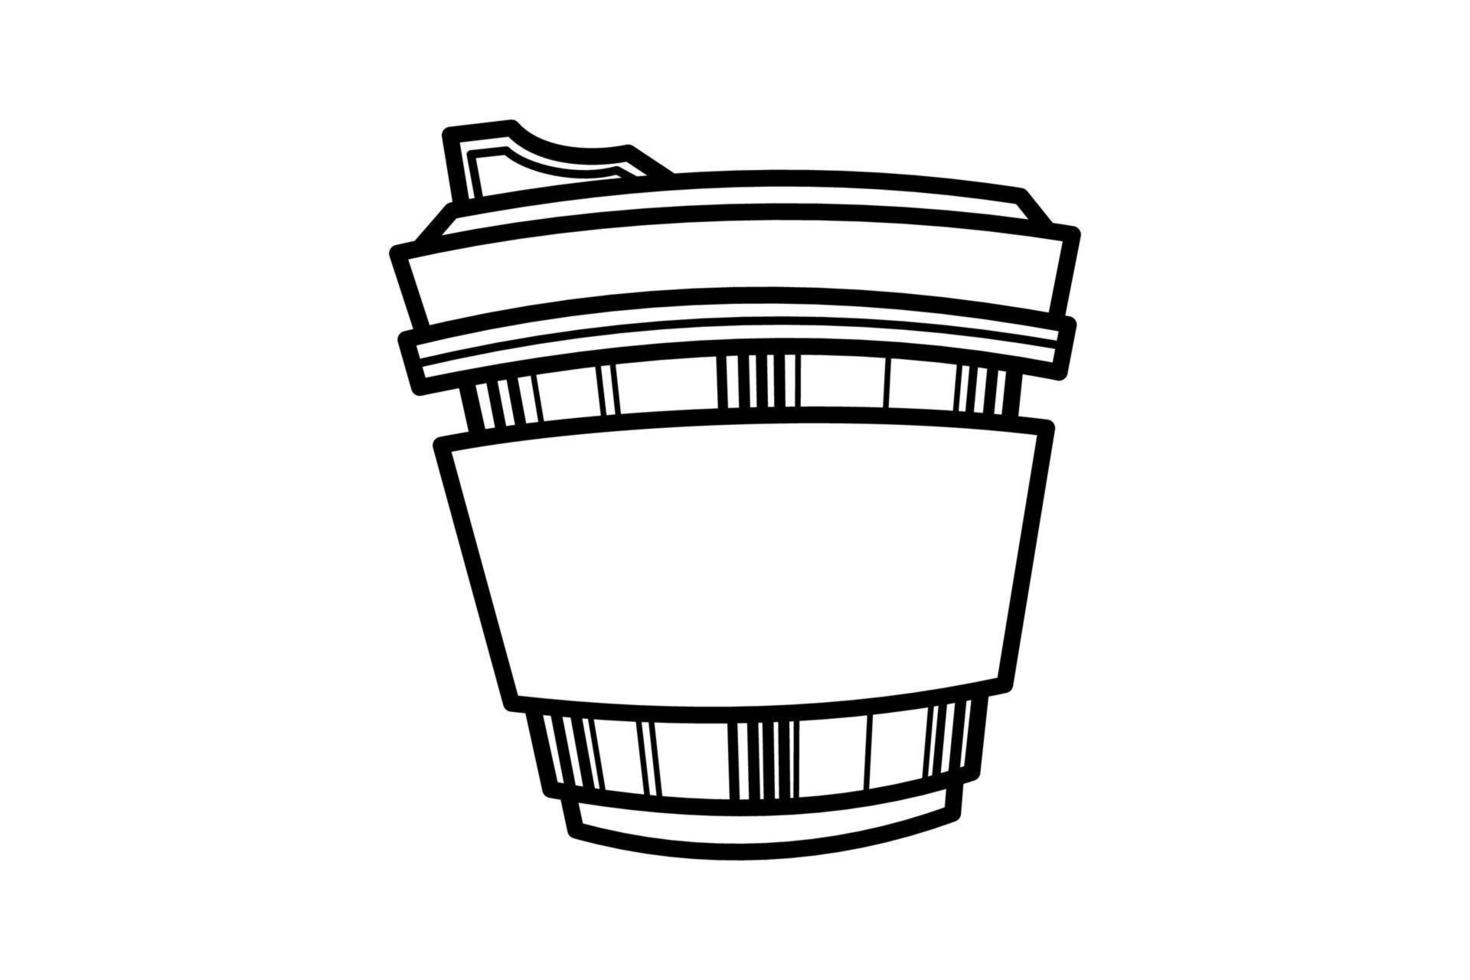 koffiekopje lijntekening decoratief kunstpatroon in kopje op witte achtergrond vector